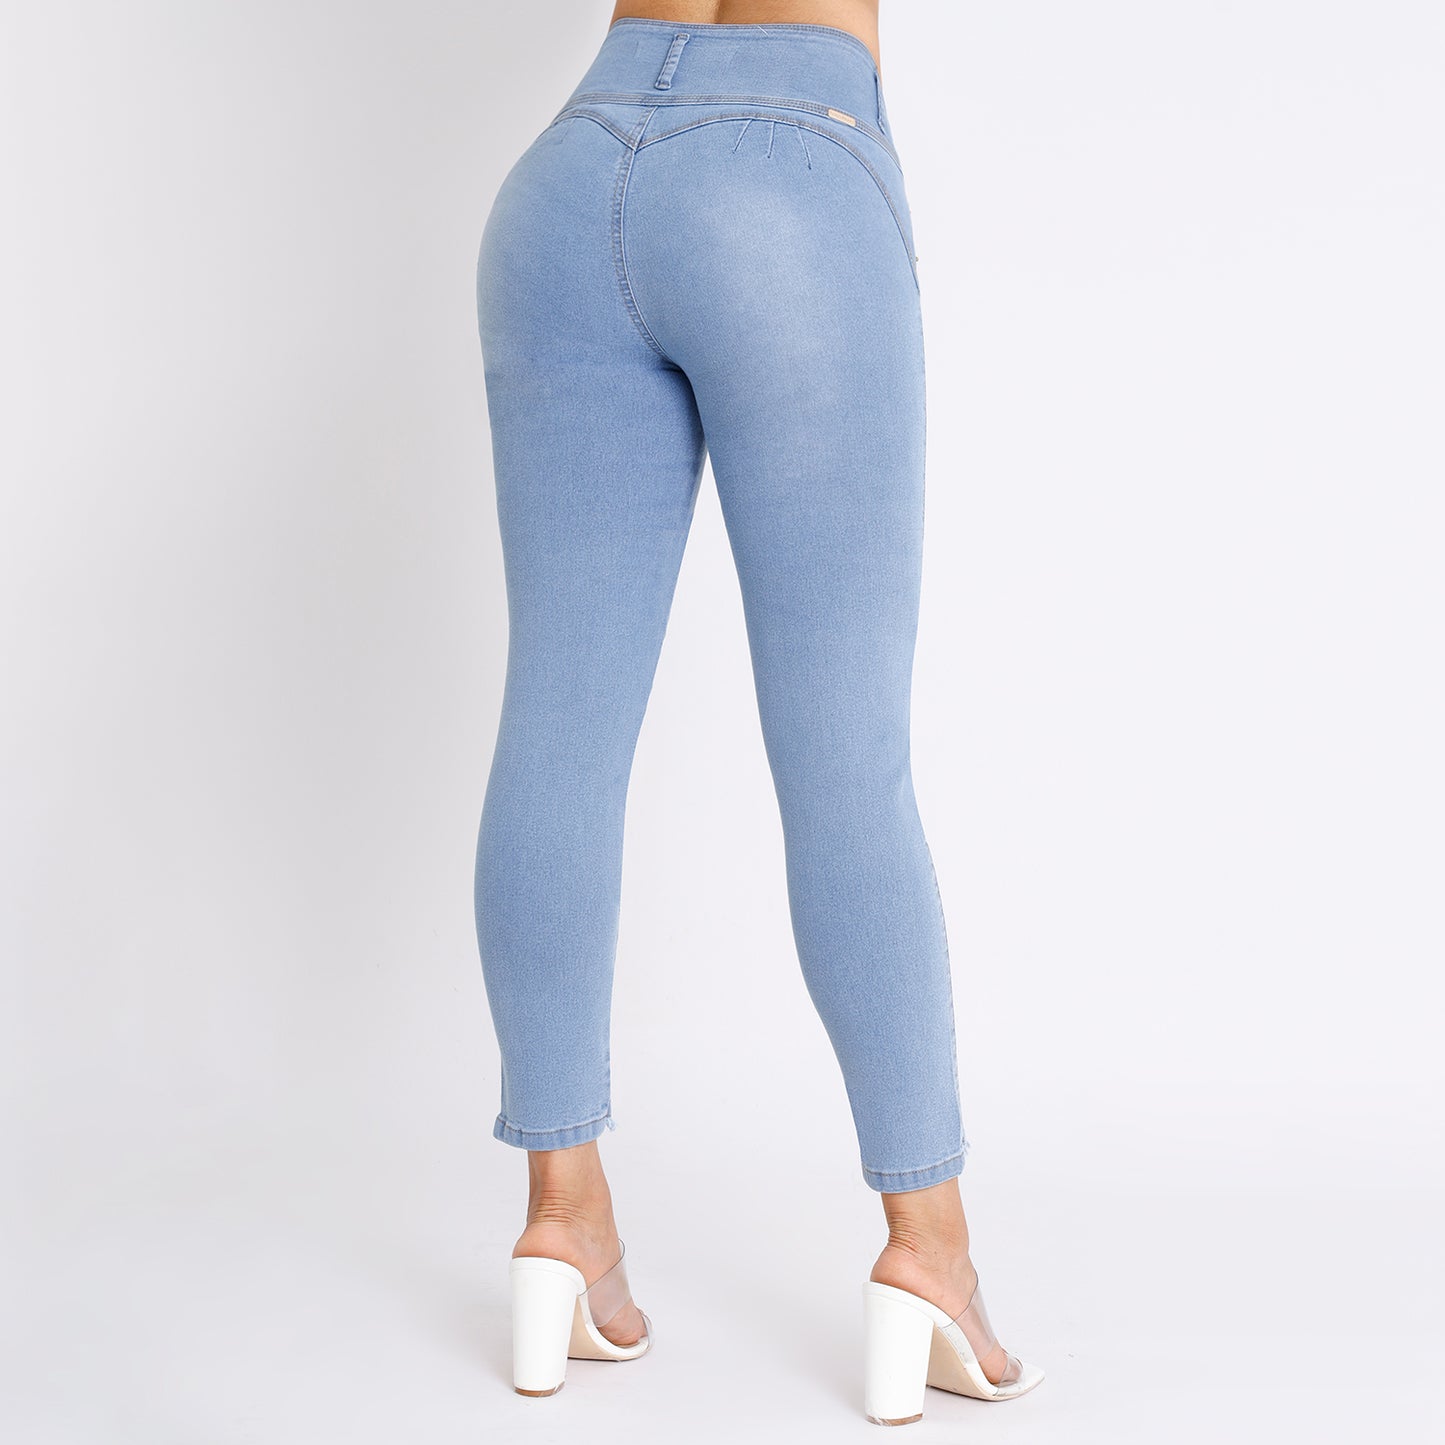 Jeans Push Up Mujer Semimoda Pitillo Tobillero Semi Cintura Diamante –  221718